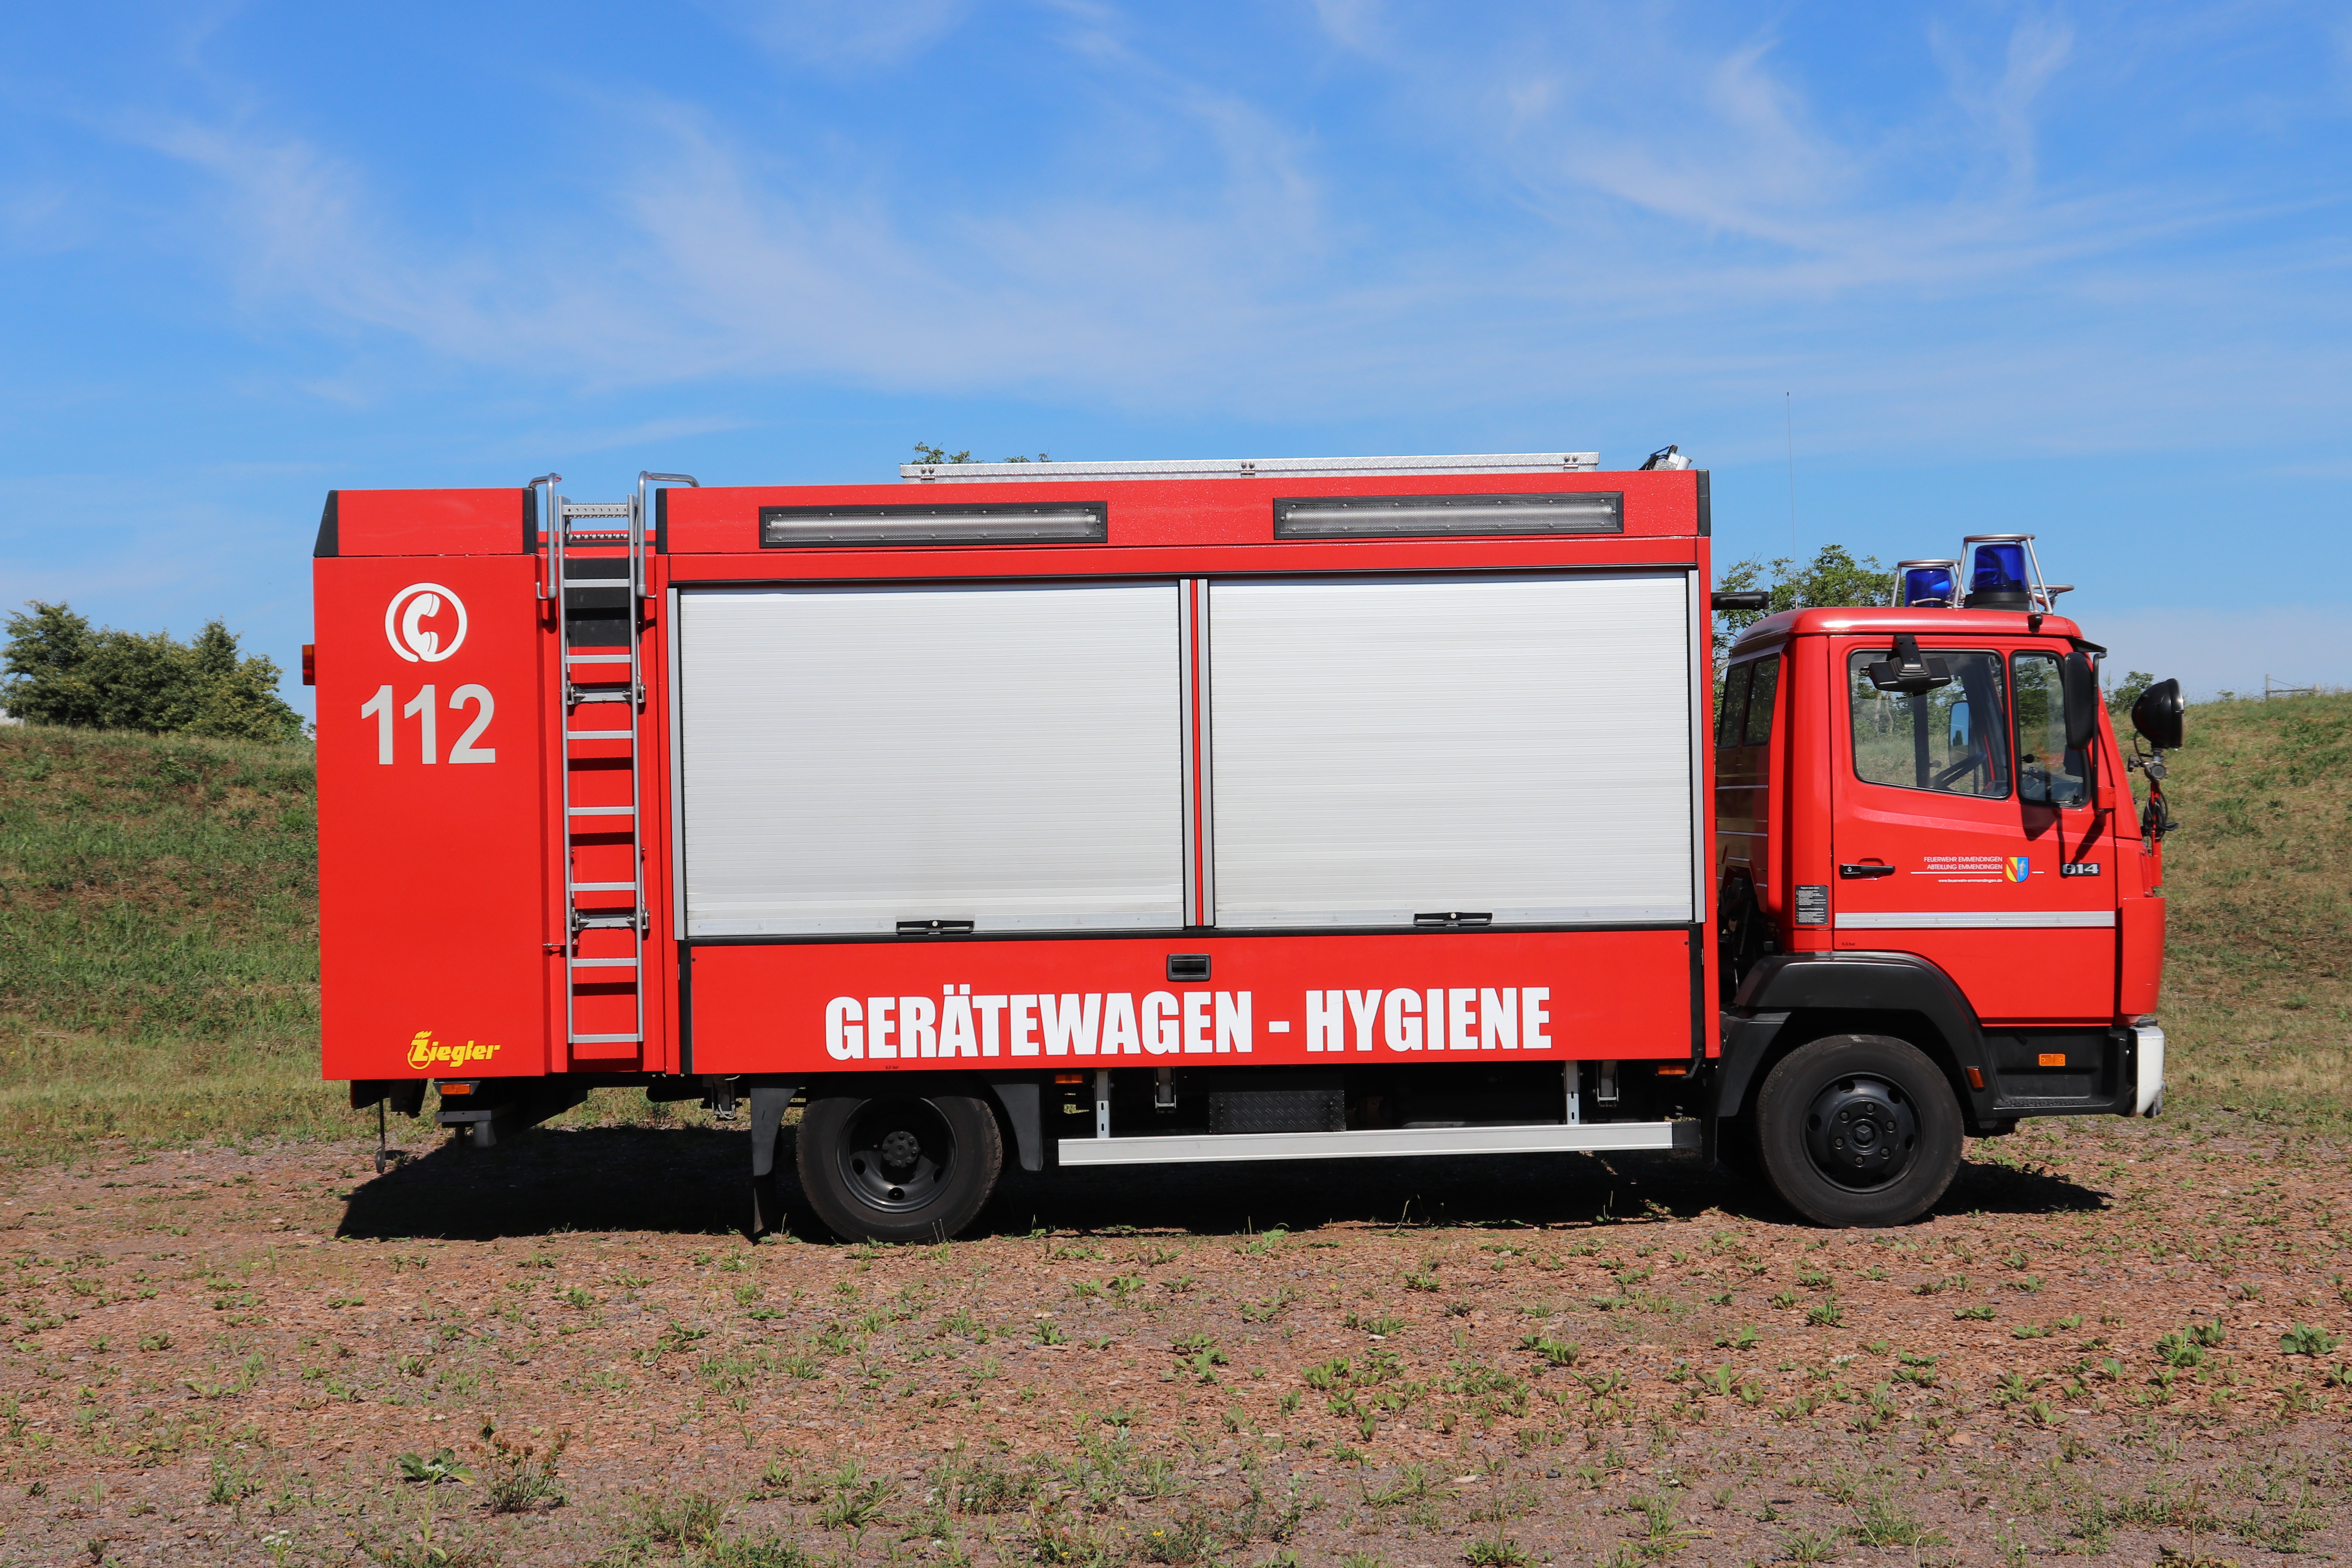 EM 59 - GW-H (Gerätewagen-Hygiene)